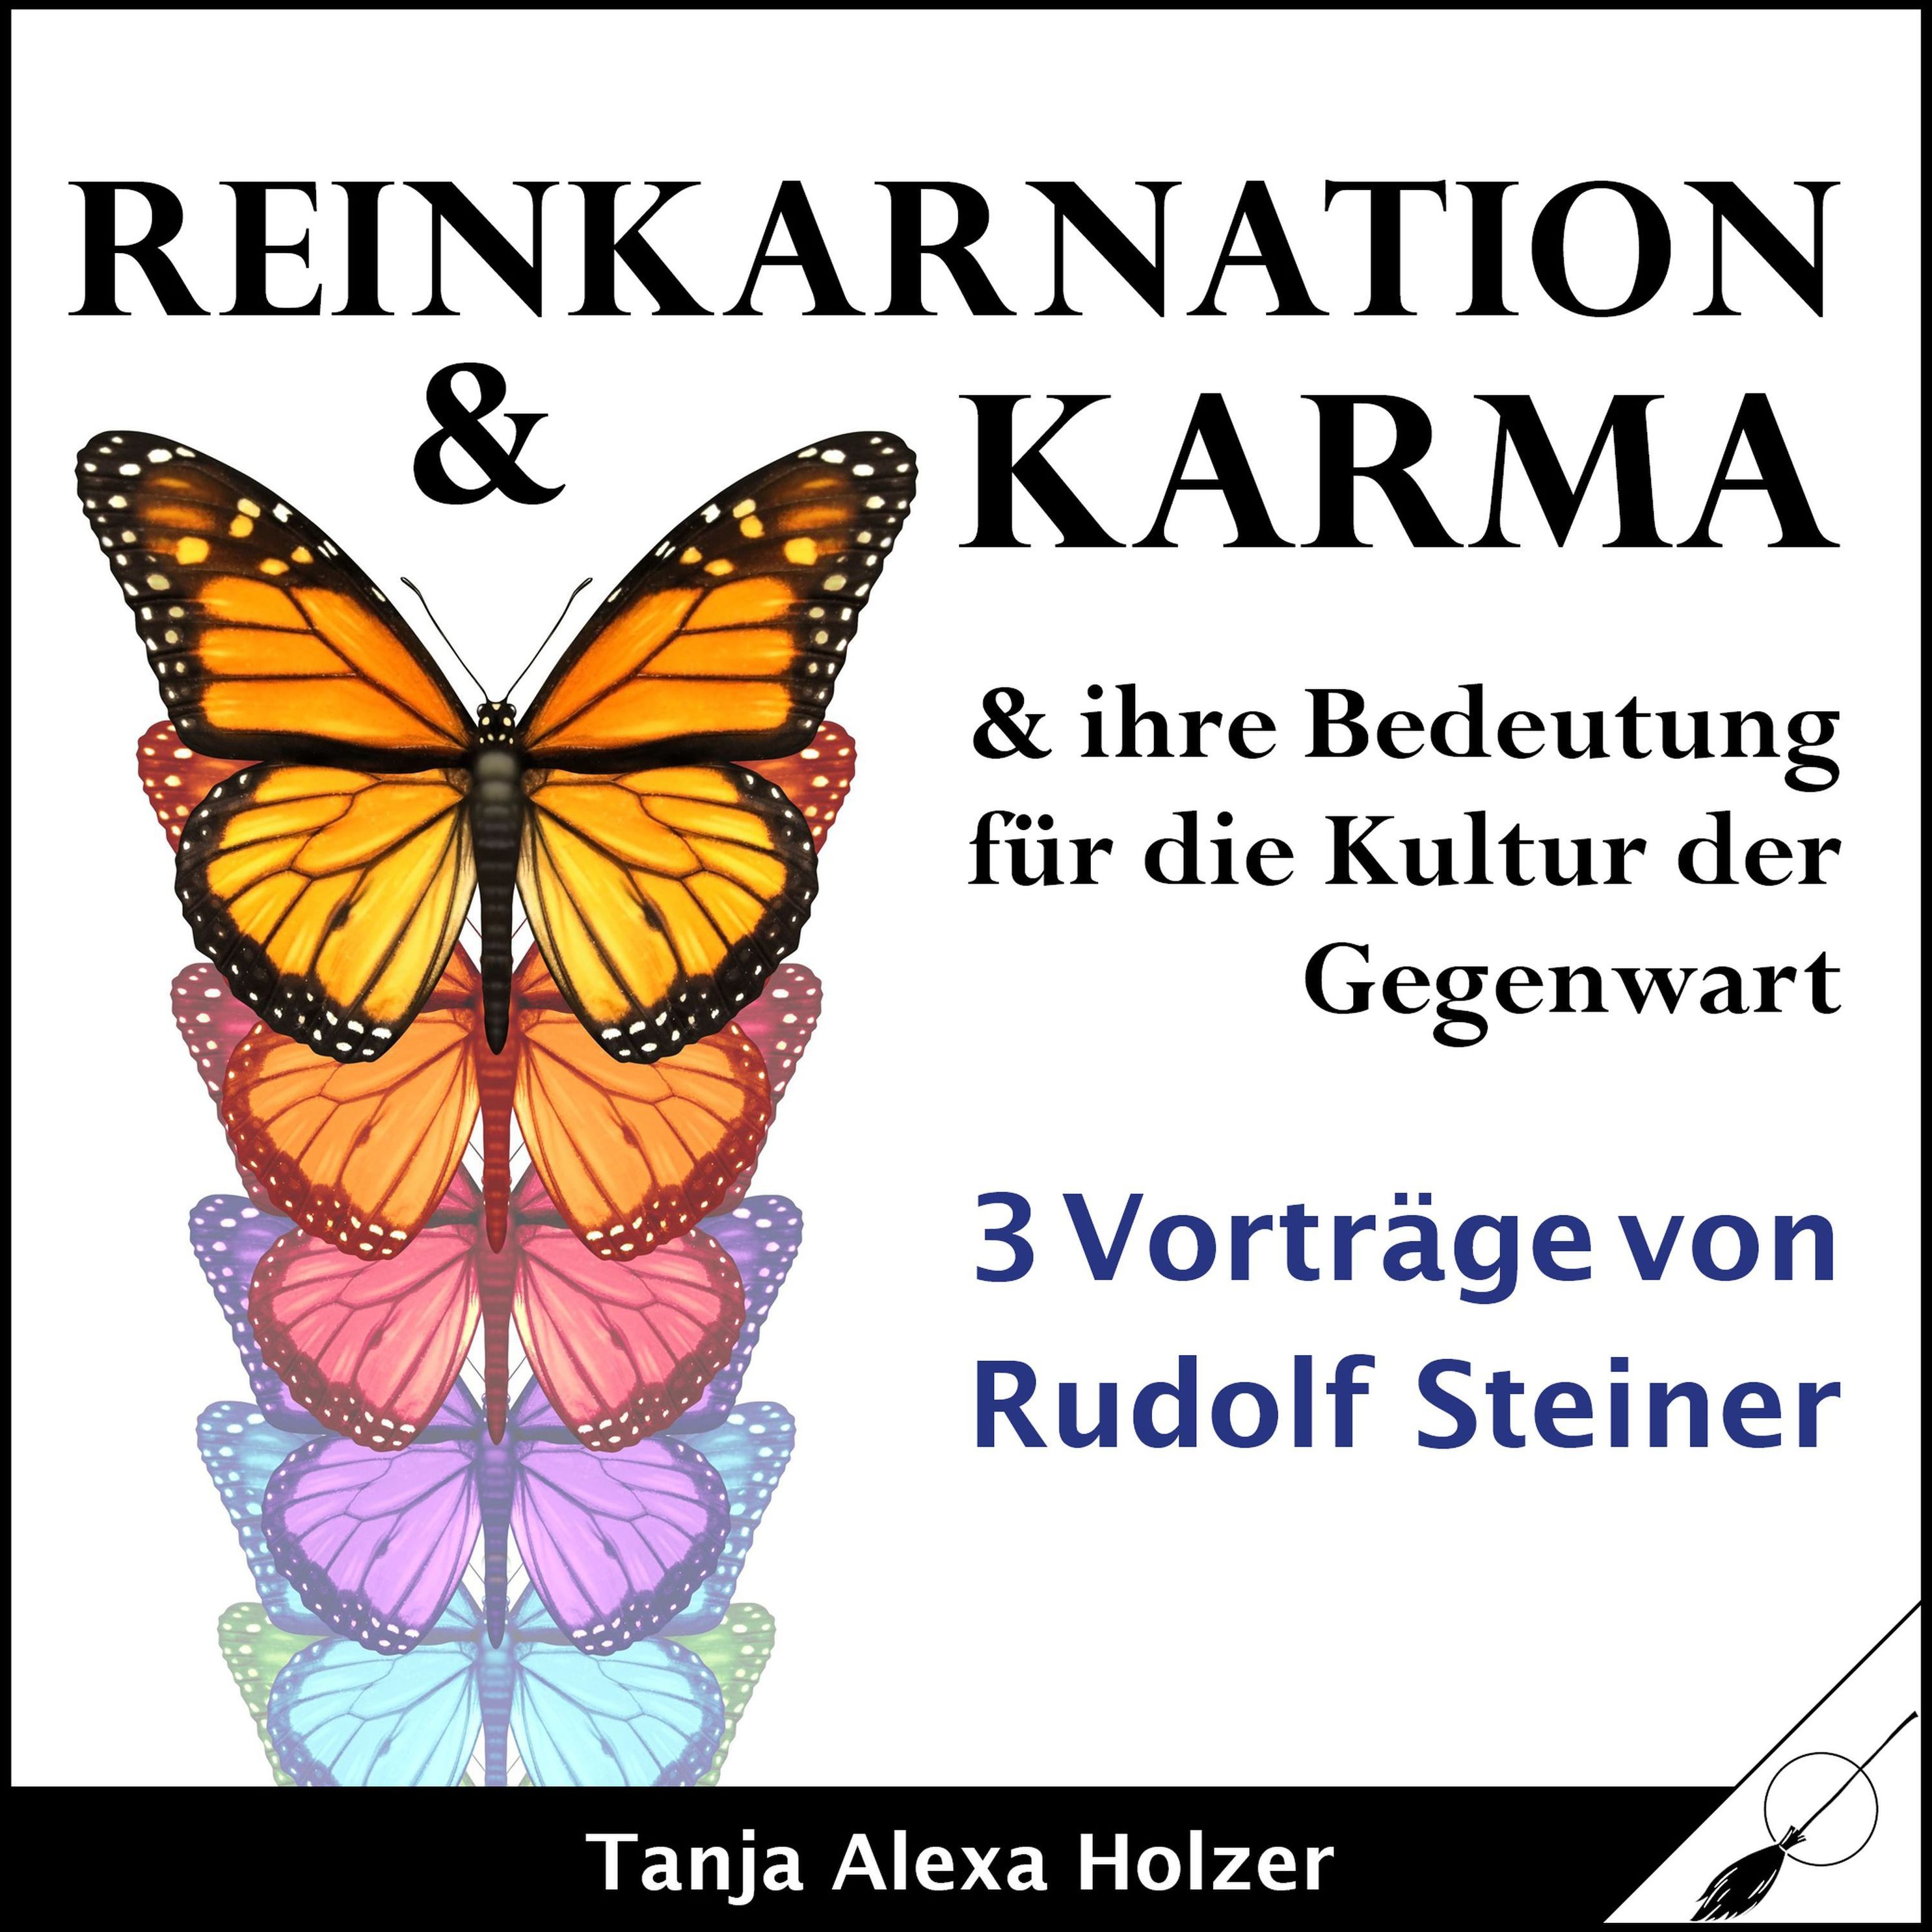 Reinkarnation & Karma Hörbuch sicher downloaden bei Weltbild.de